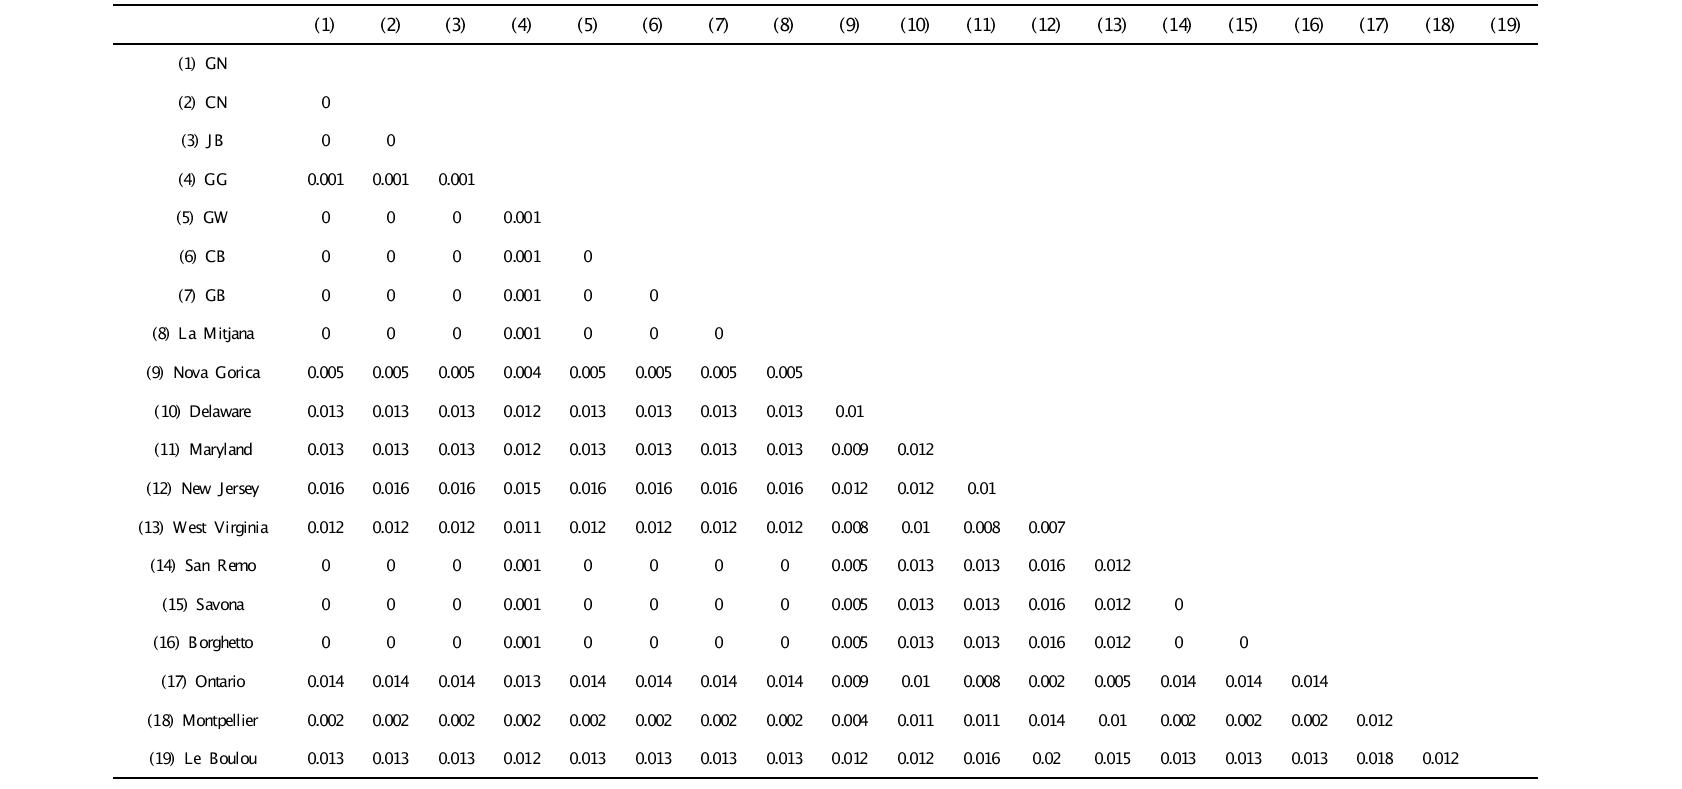 미국선녀벌레 각 집단간 평균 유전적 거리